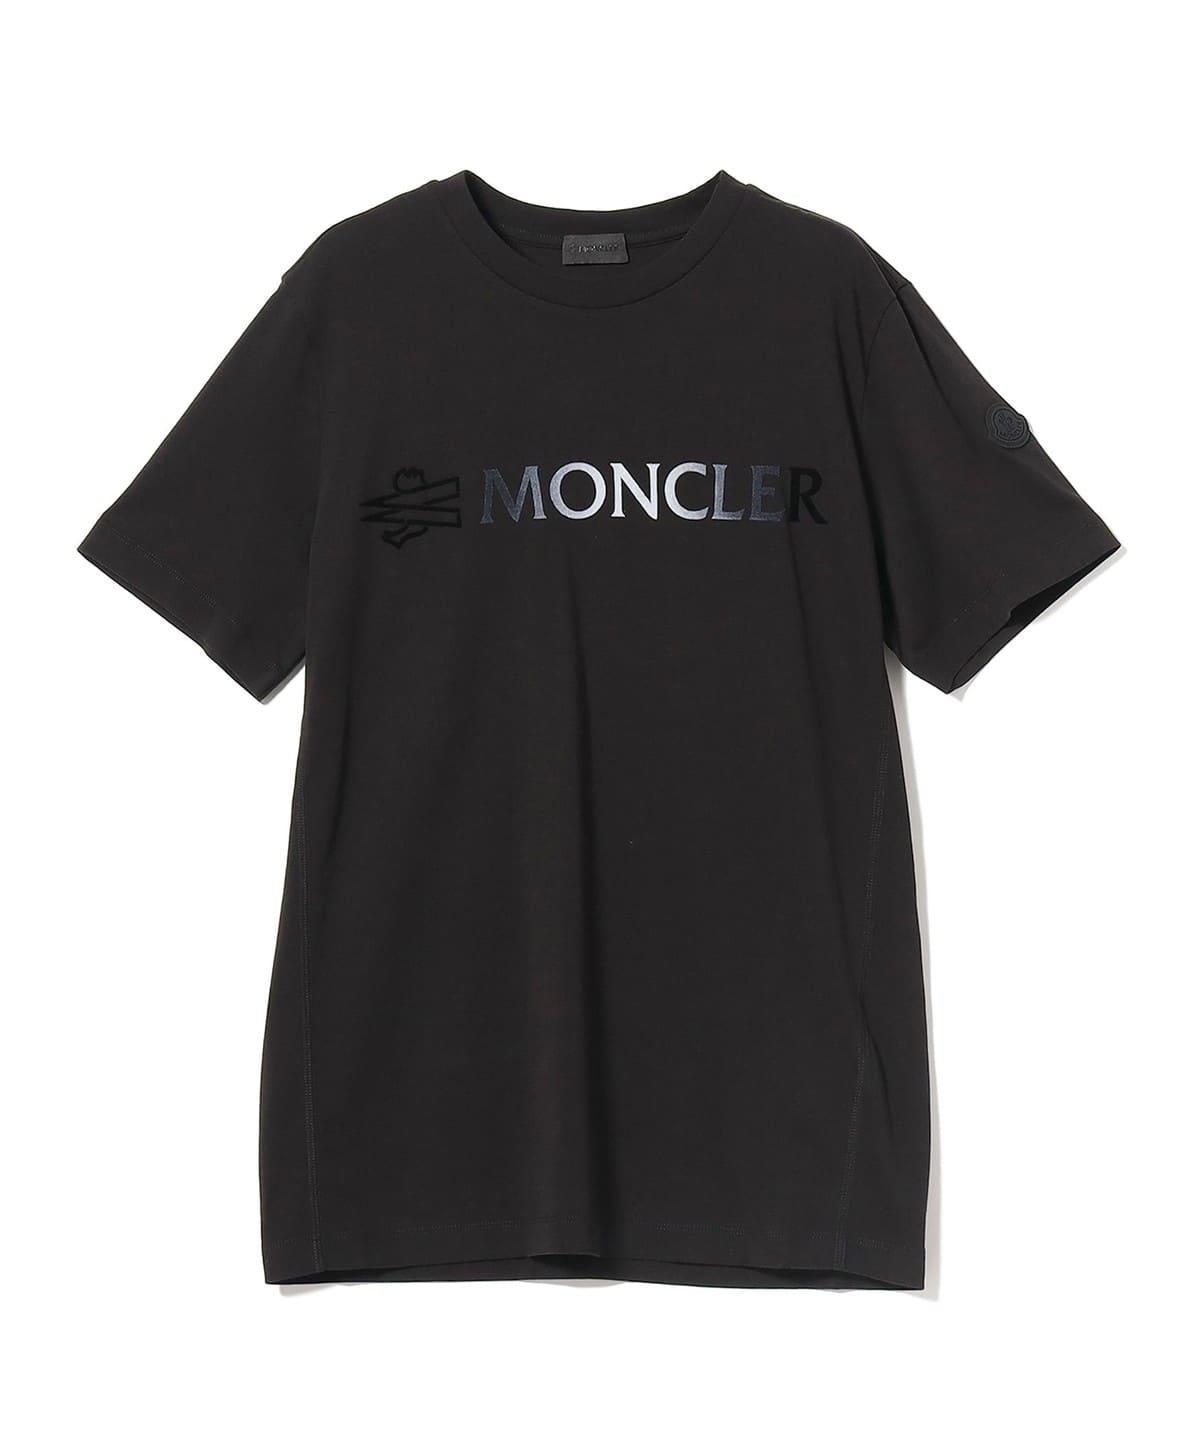 モンクレール 現行品 グラデーションロゴ Tシャツ size S ブラック約43cm